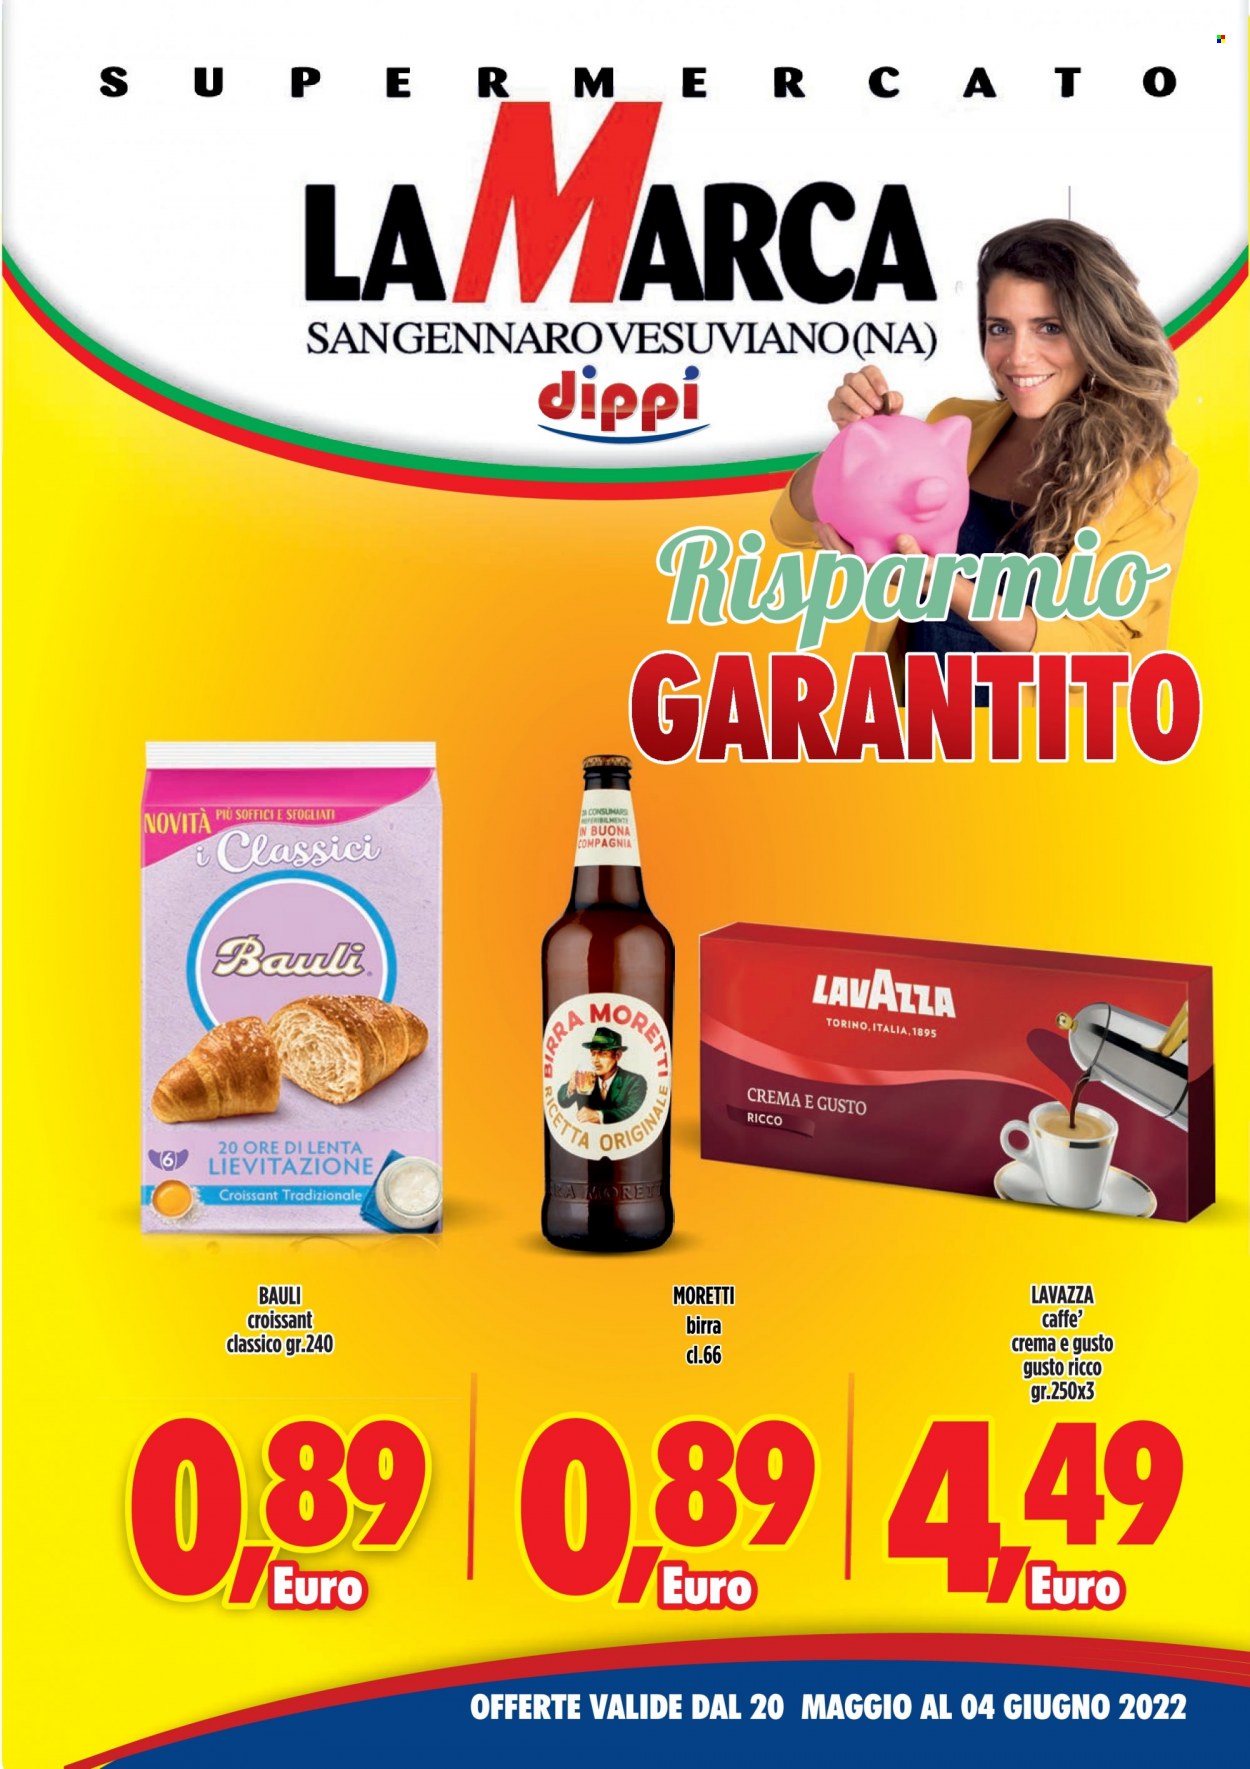 thumbnail - Volantino SISA - 20/5/2022 - 4/6/2022 - Prodotti in offerta - Birra Moretti, birra, Bauli, croissant, caffè, Lavazza. Pagina 1.